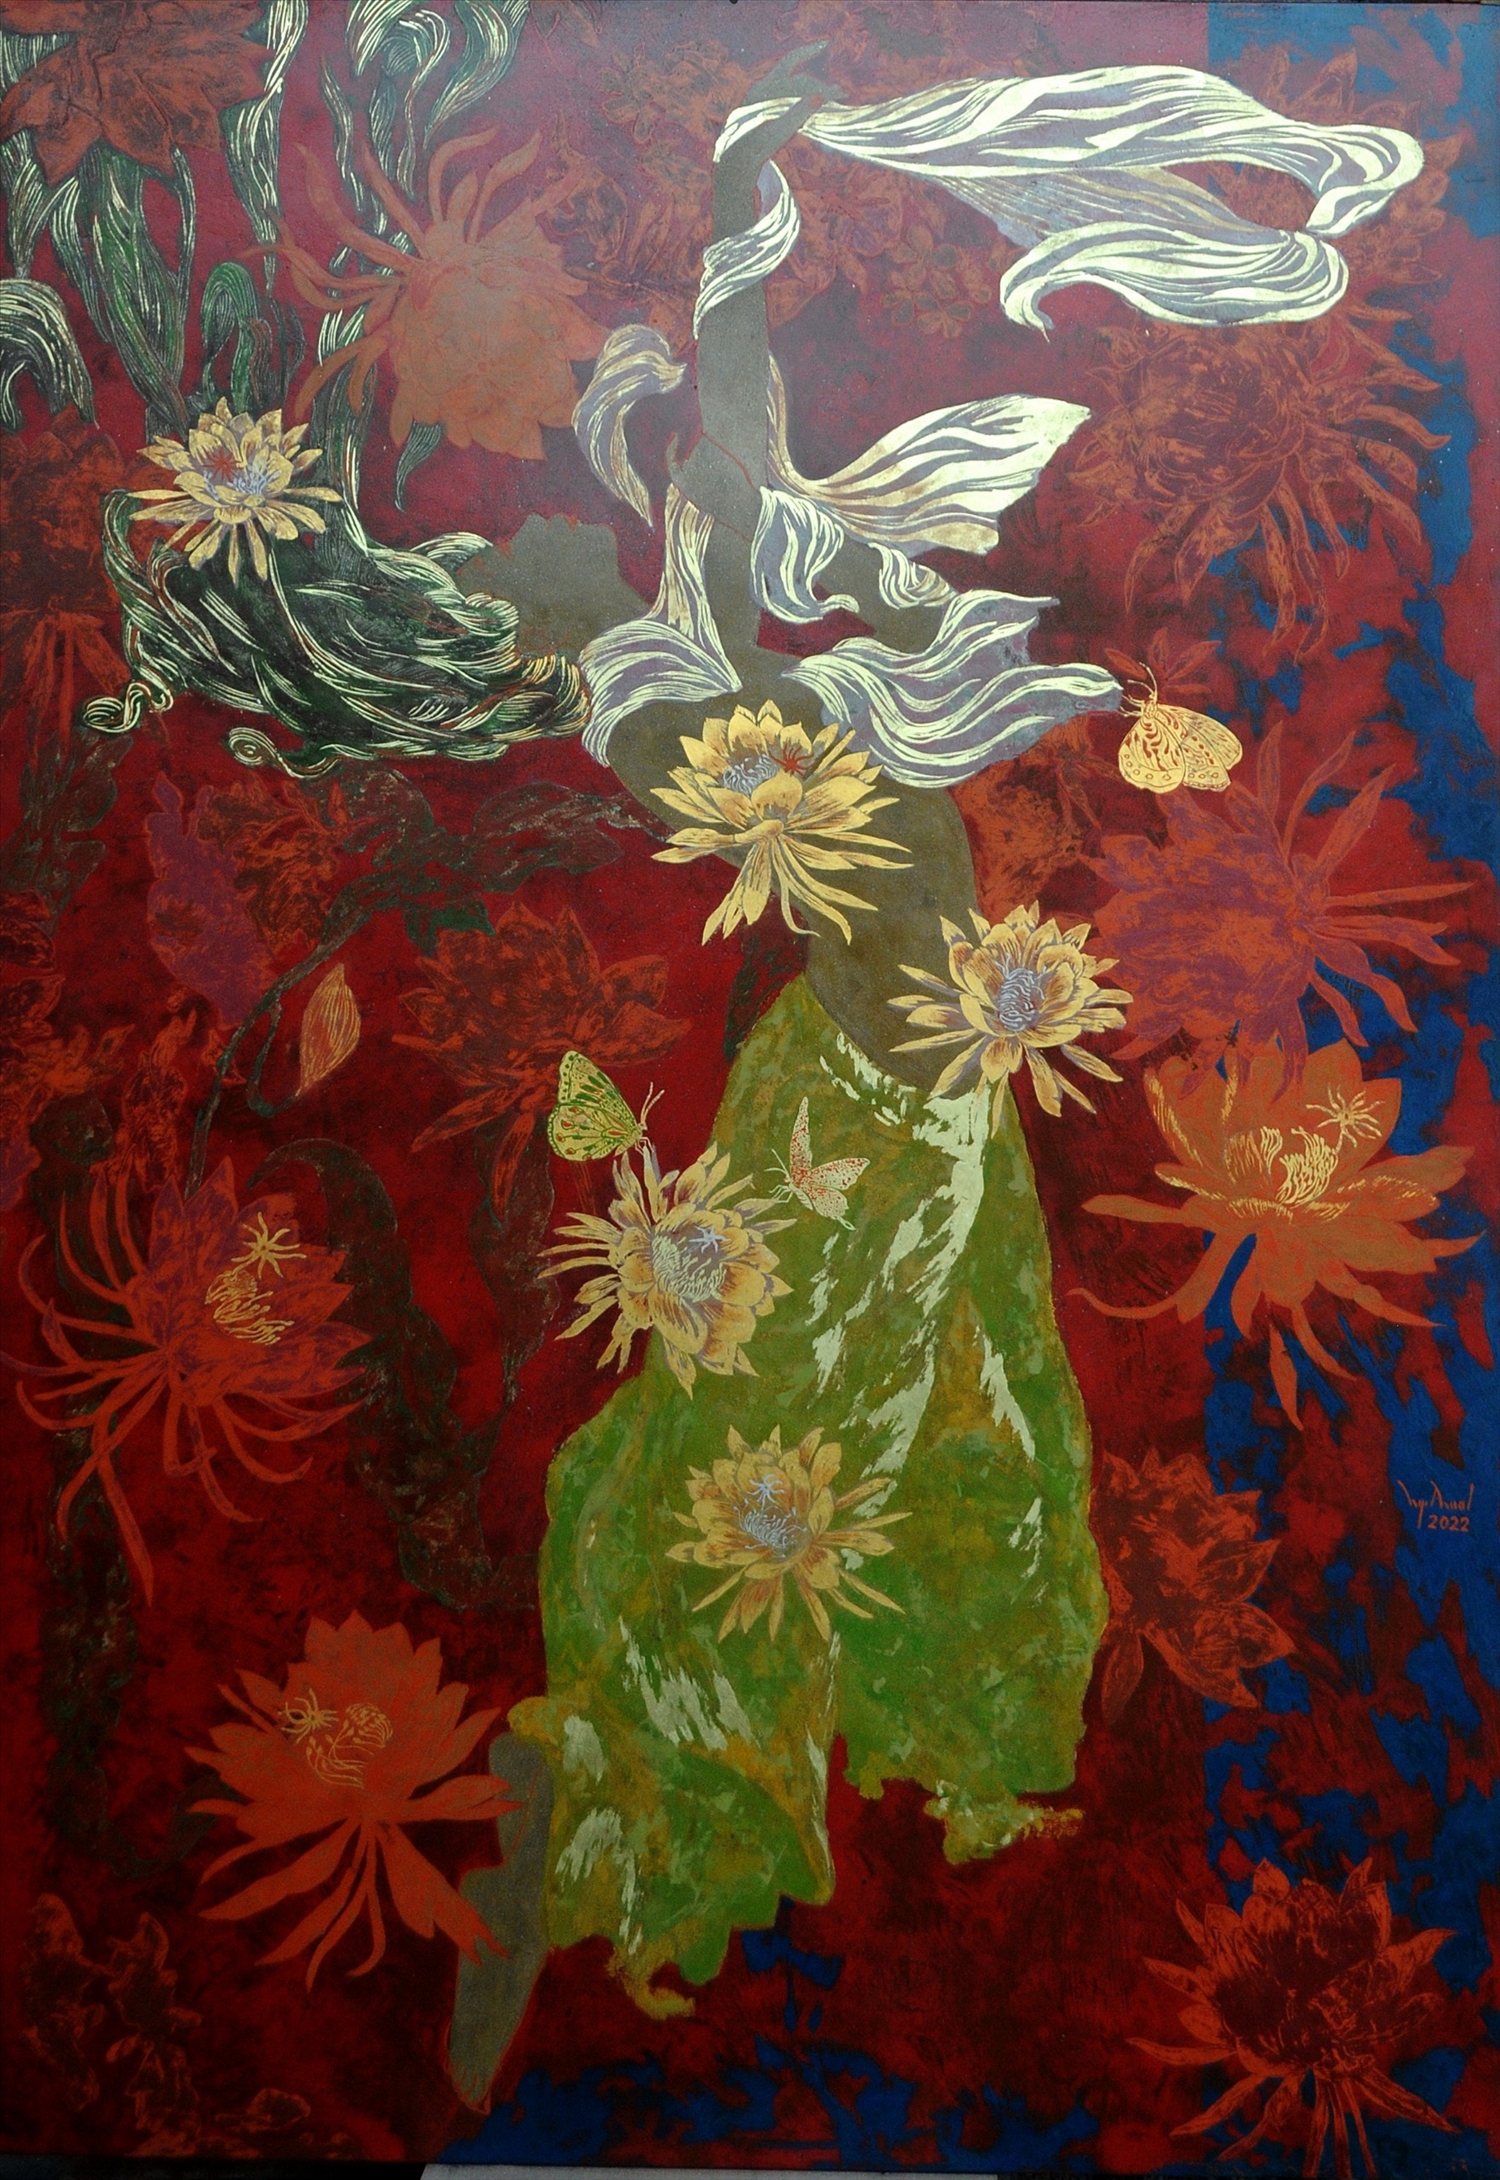 Tranh sơn mài “ Hoa nở về đêm 3”, của họa sĩ Nguyễn Văn Thuật